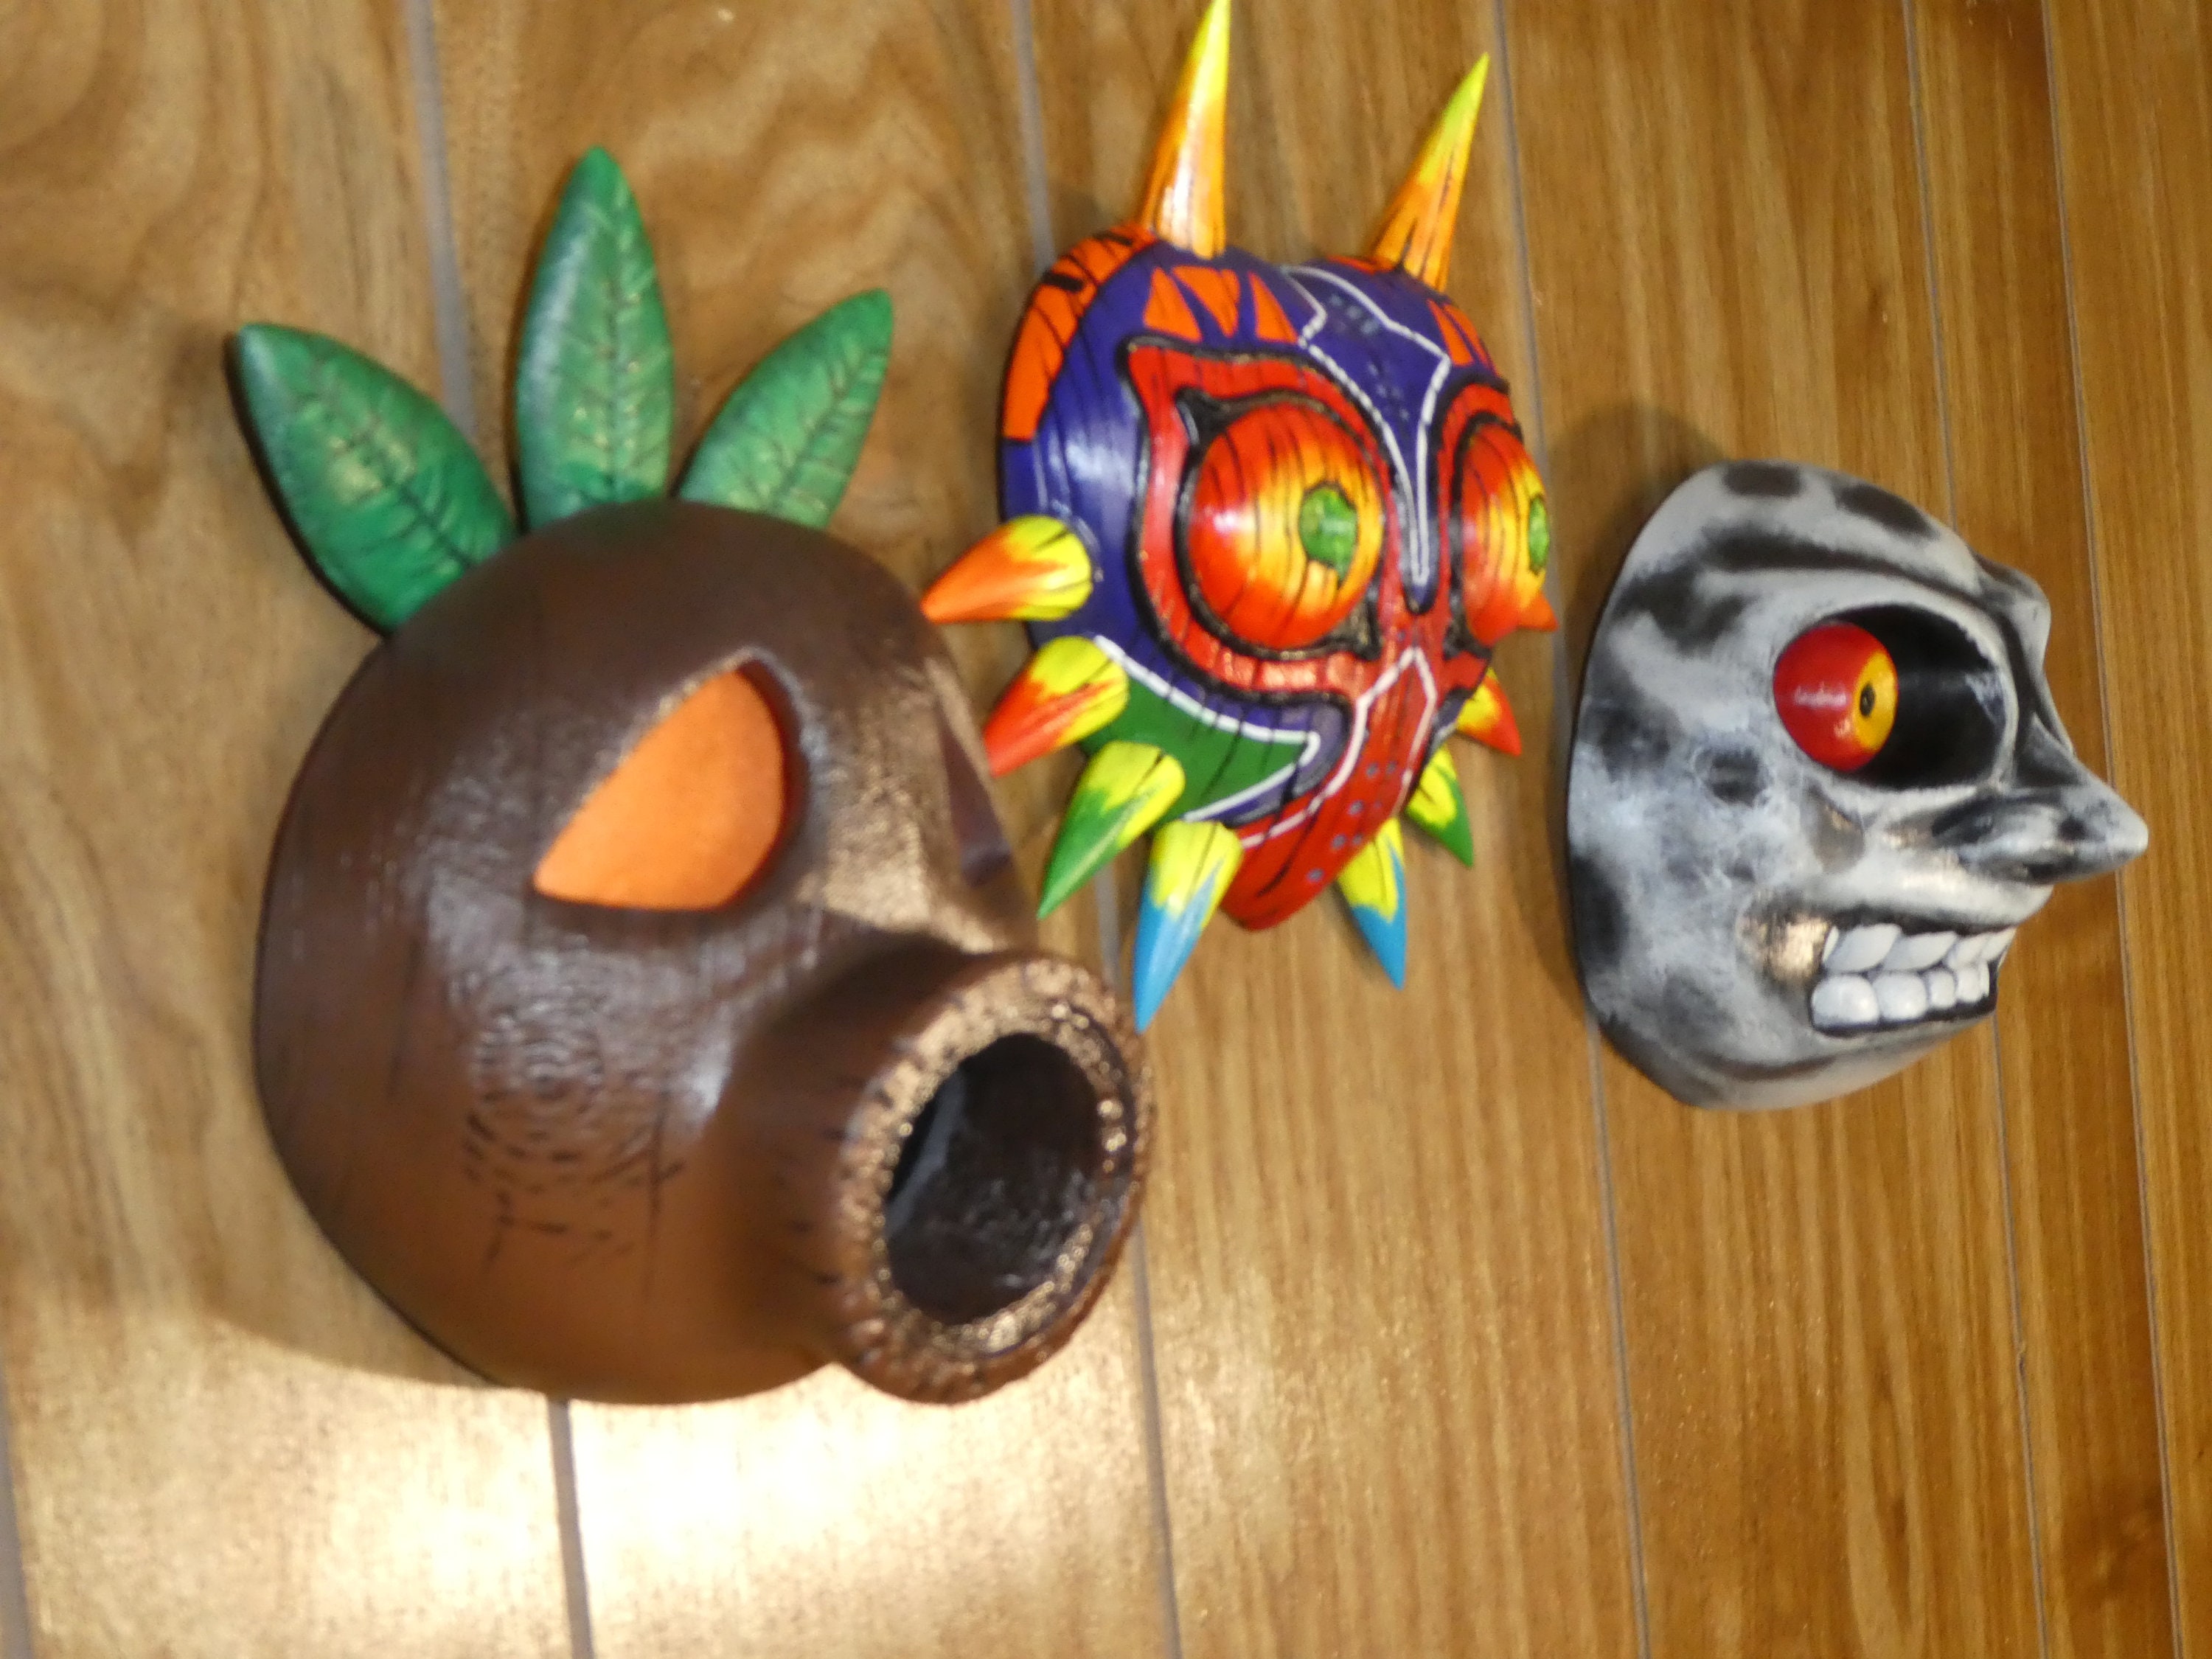 Zelda - Majora's Mask - MiDankies Designs